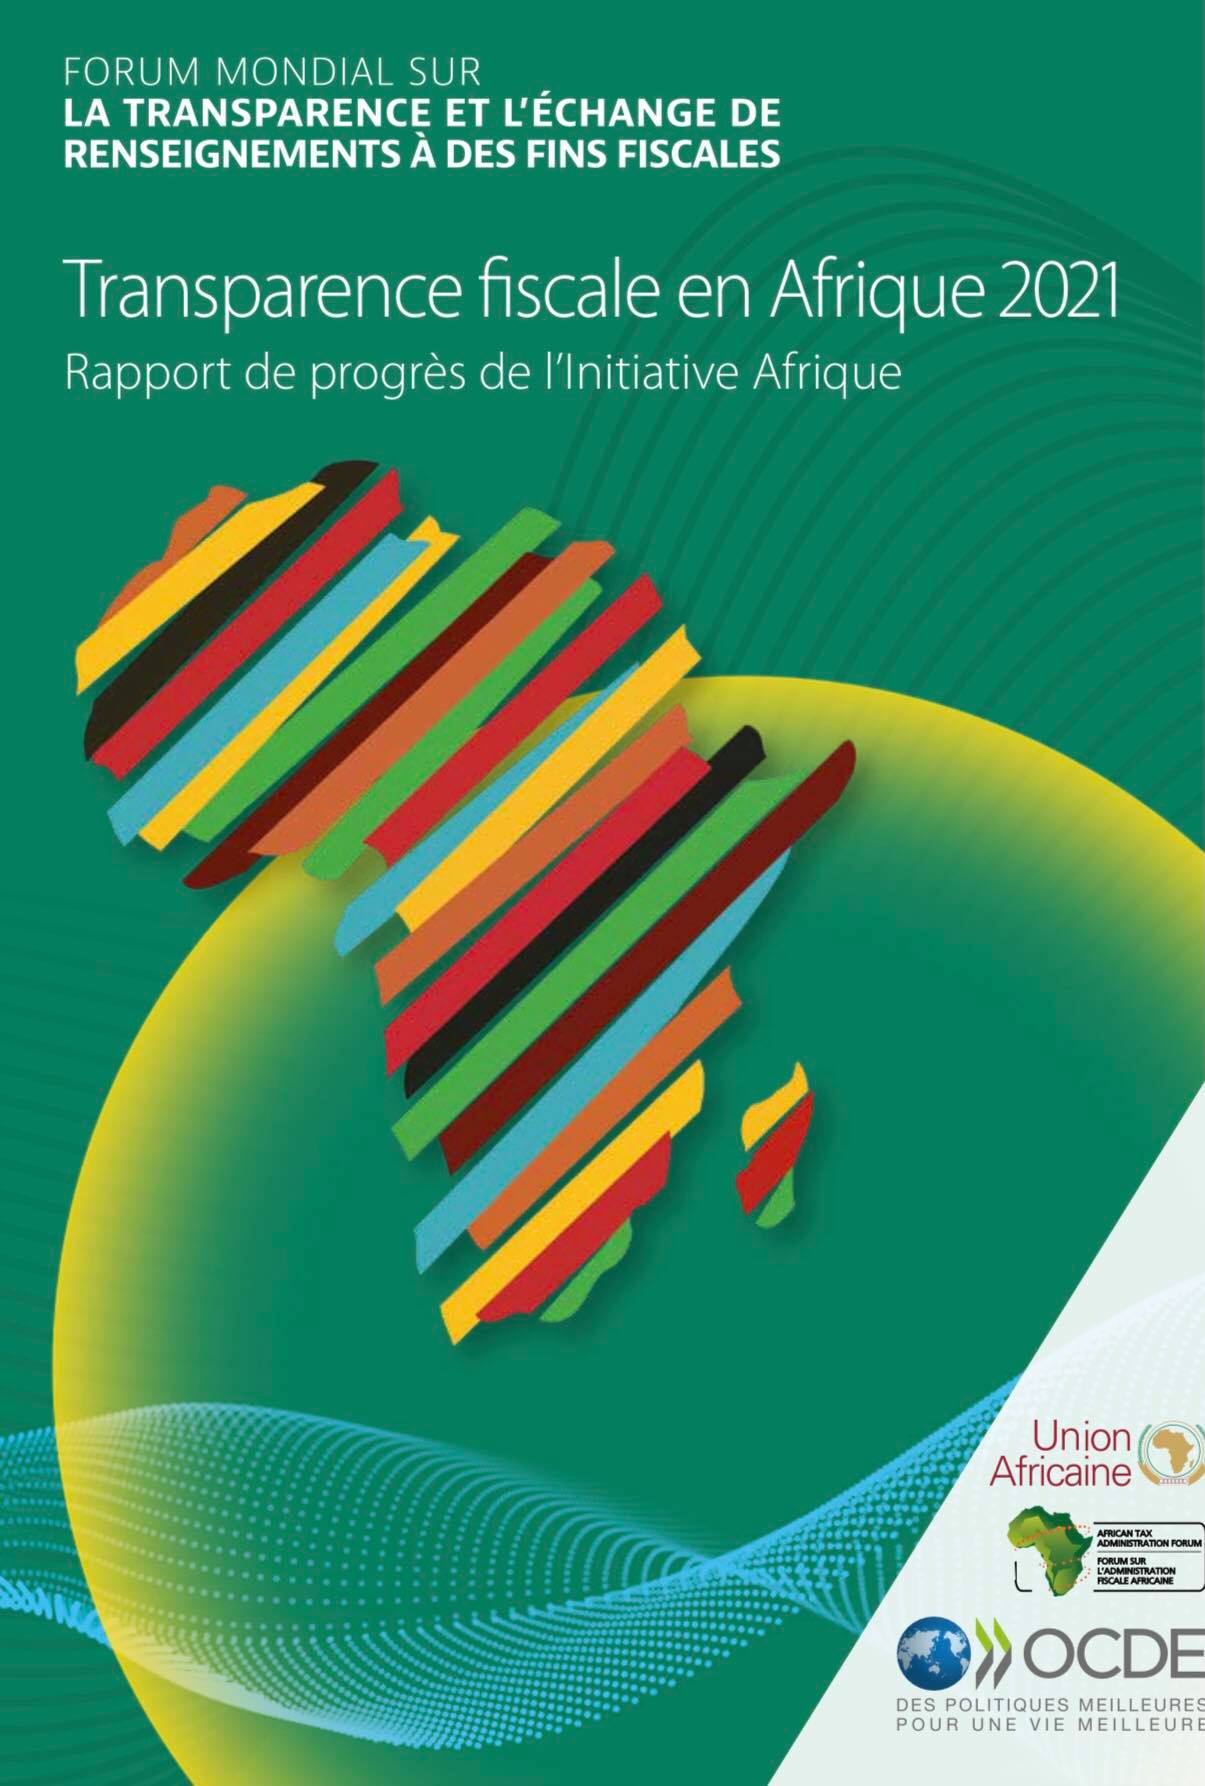 في تقرير دولي  حول الشفافية ومقاومة التهرب الجبائي: تونس الأولى افريقيا من مجال تبادل المعلومات الجبائية